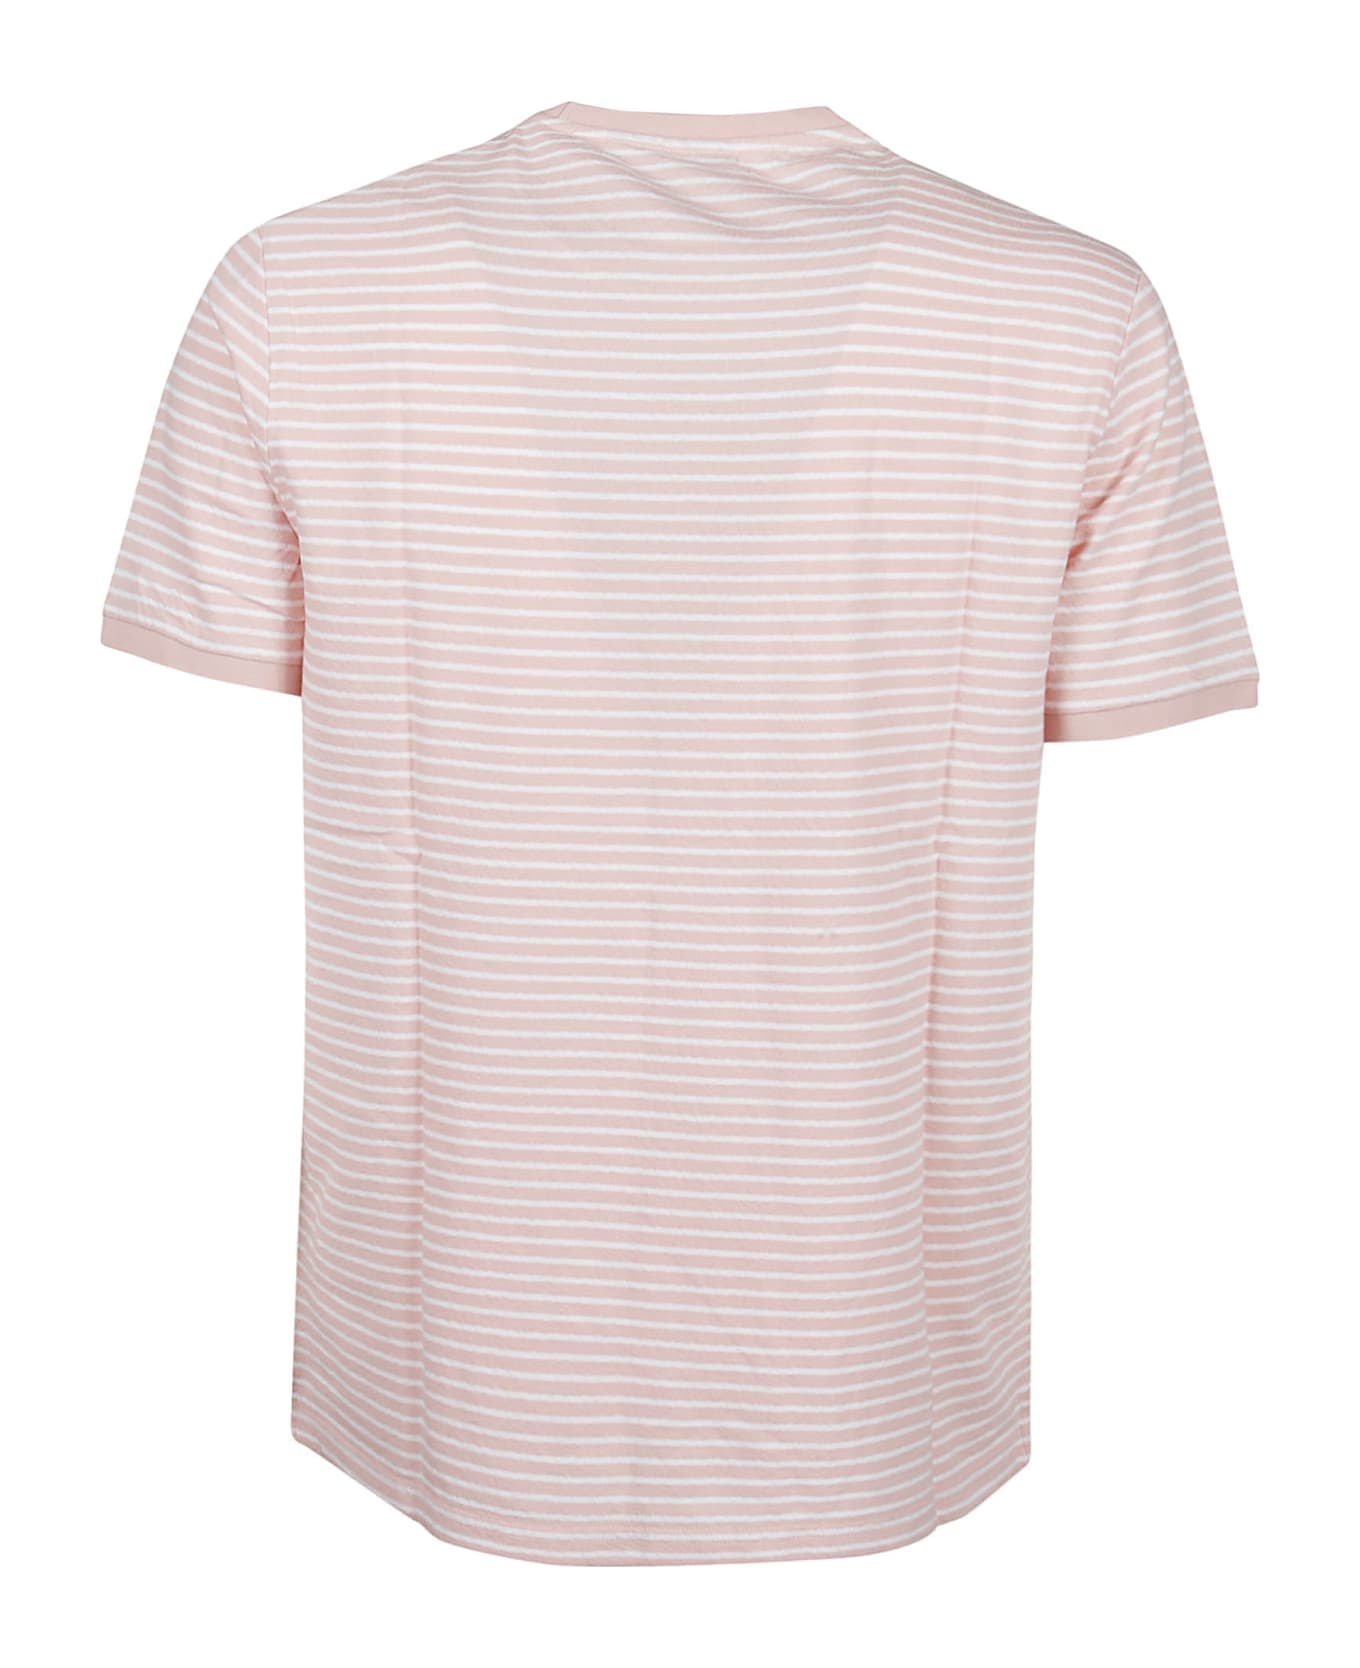 Michael Kors Feeder T-shirt - Rosewater